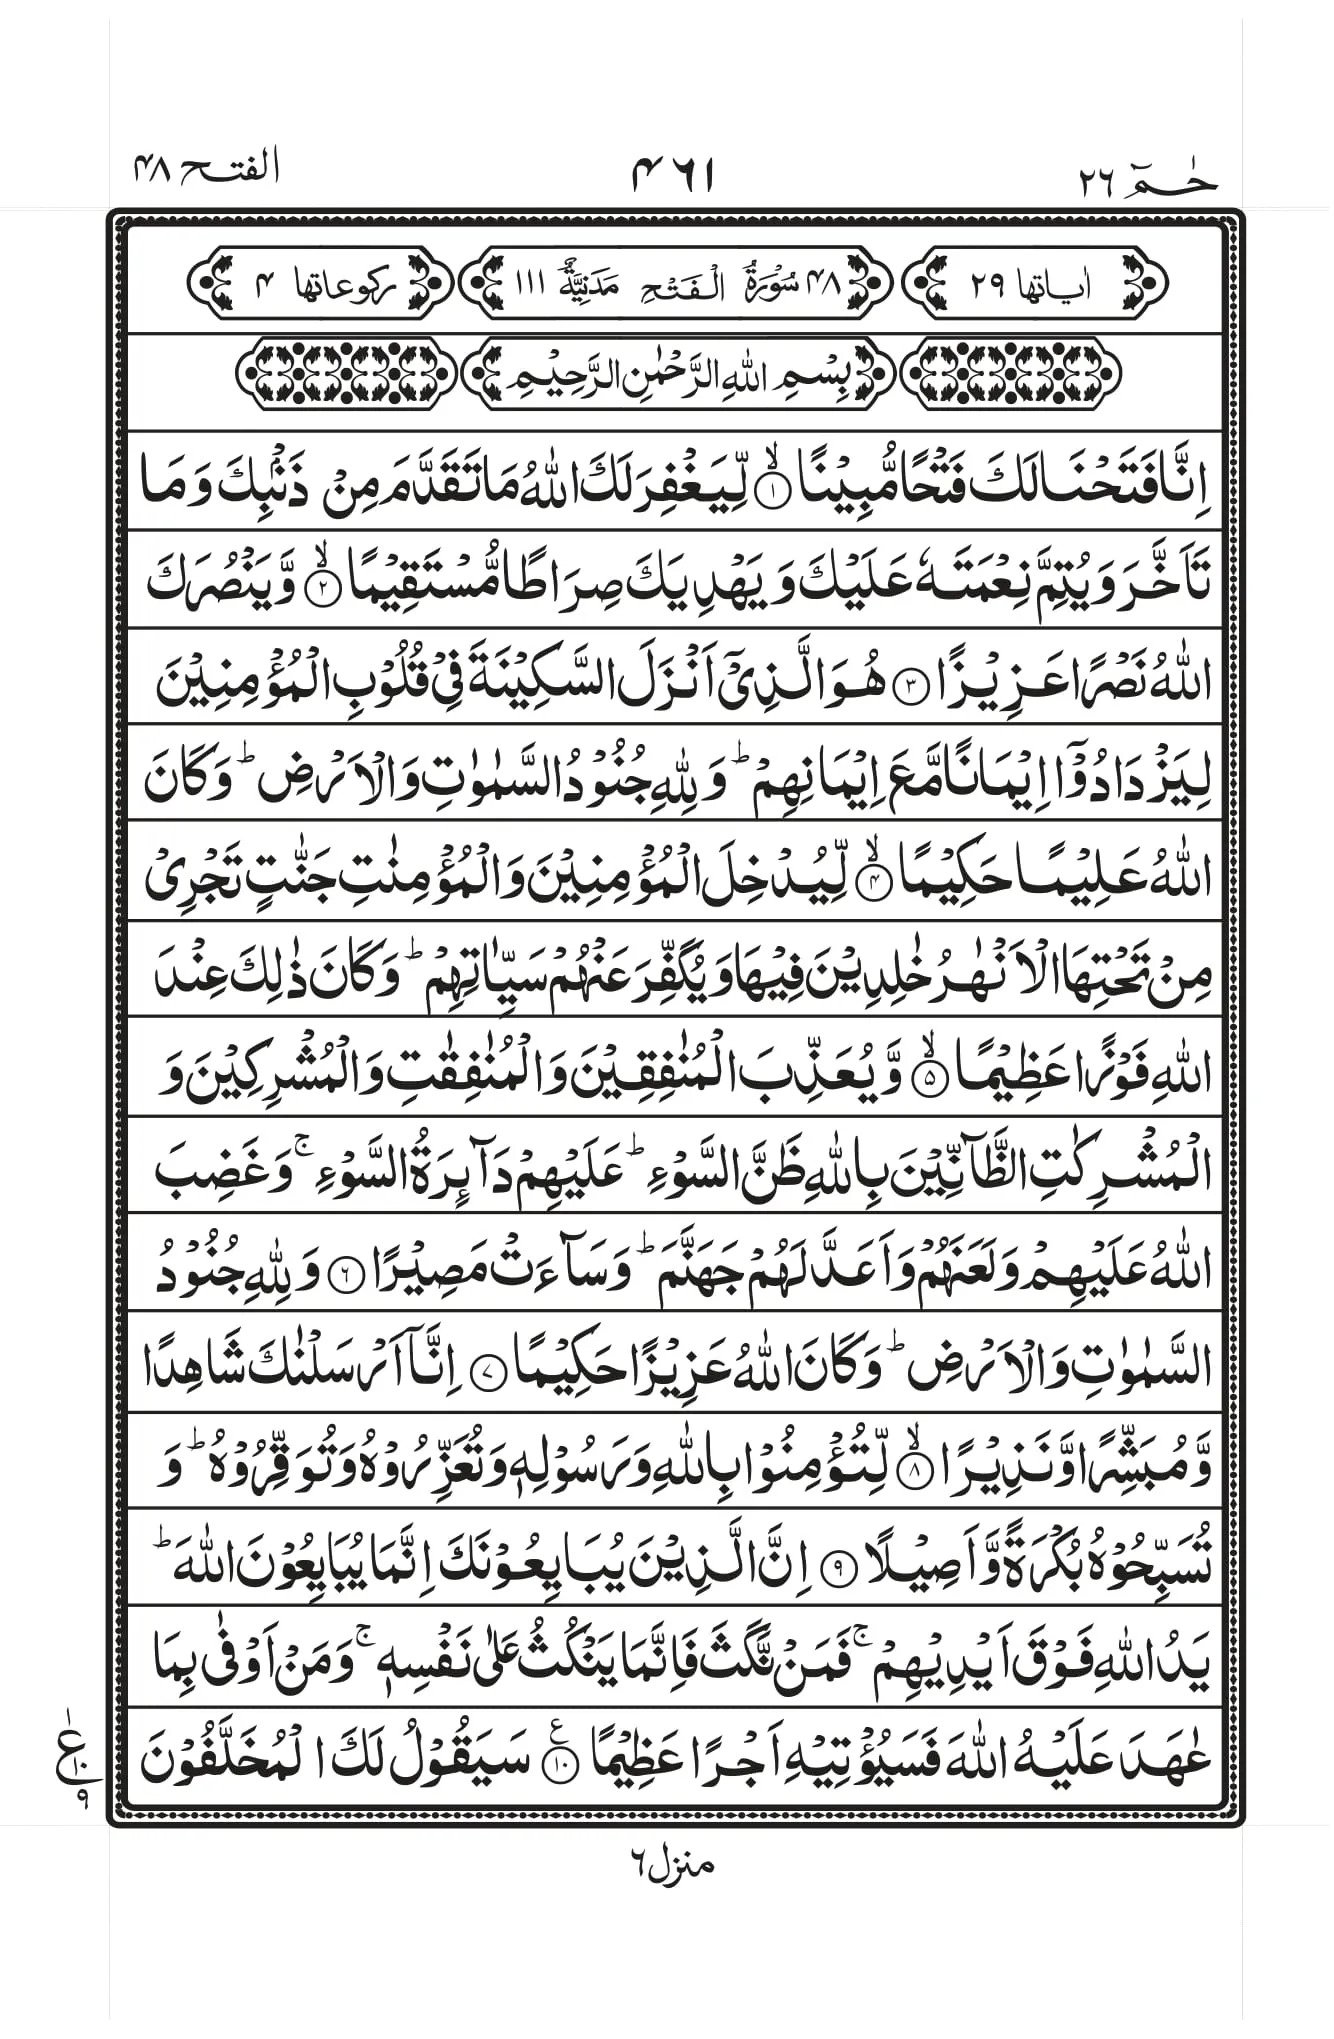 Surah Fatah page 1